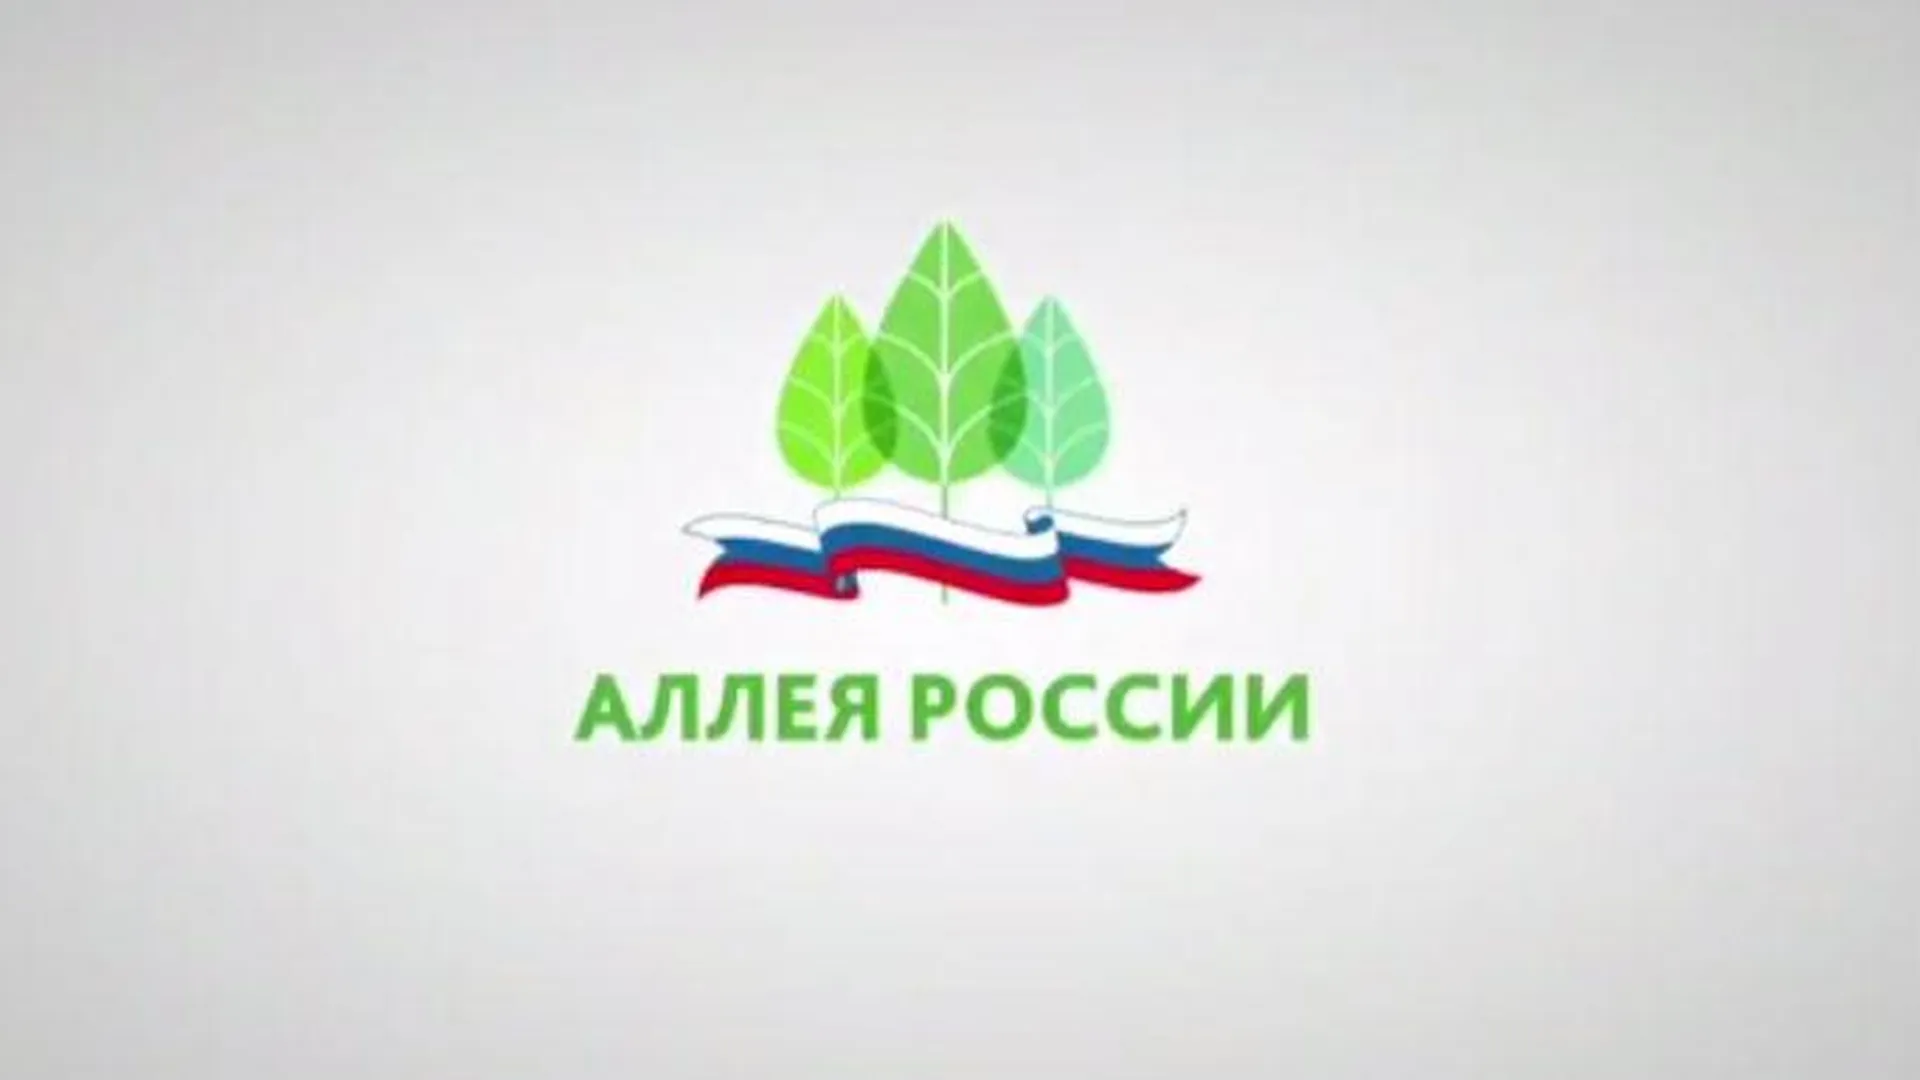 Официальный сайт акции "Аллея России"